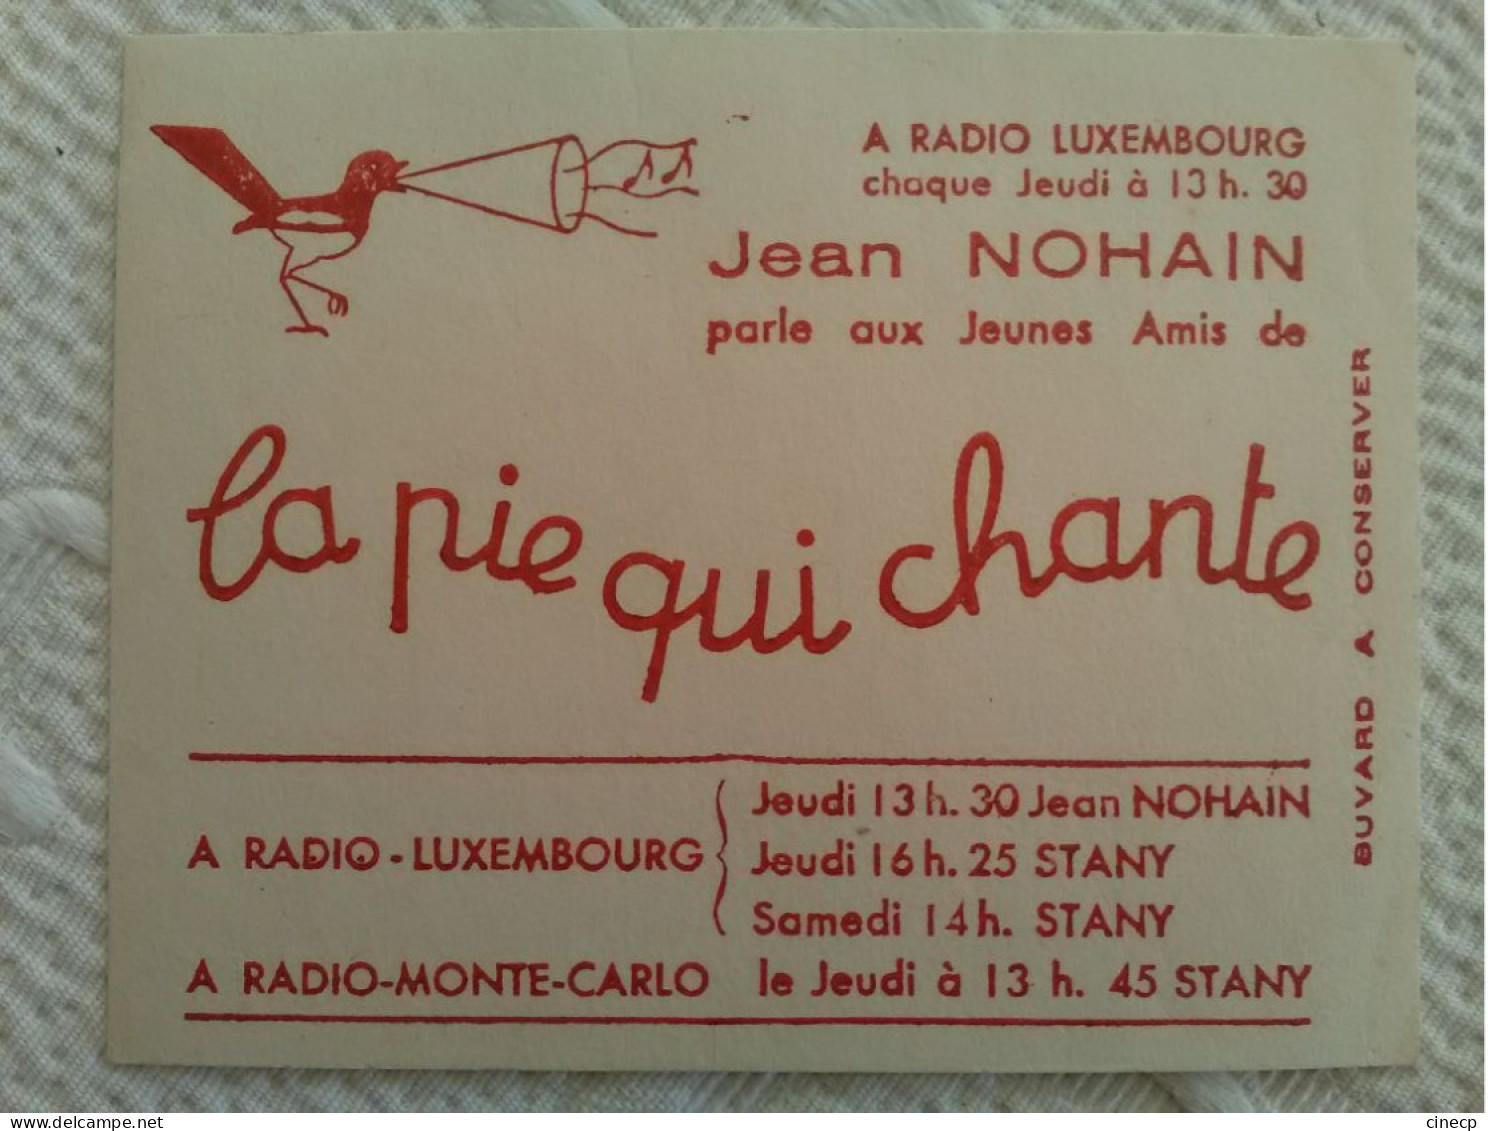 Buvard Publicitaire Ancien LA PIE QUI CHANTE ILLUSTRATEUR Radio Luxembourg Monte Carlo Jean NOHAIN - Infantiles